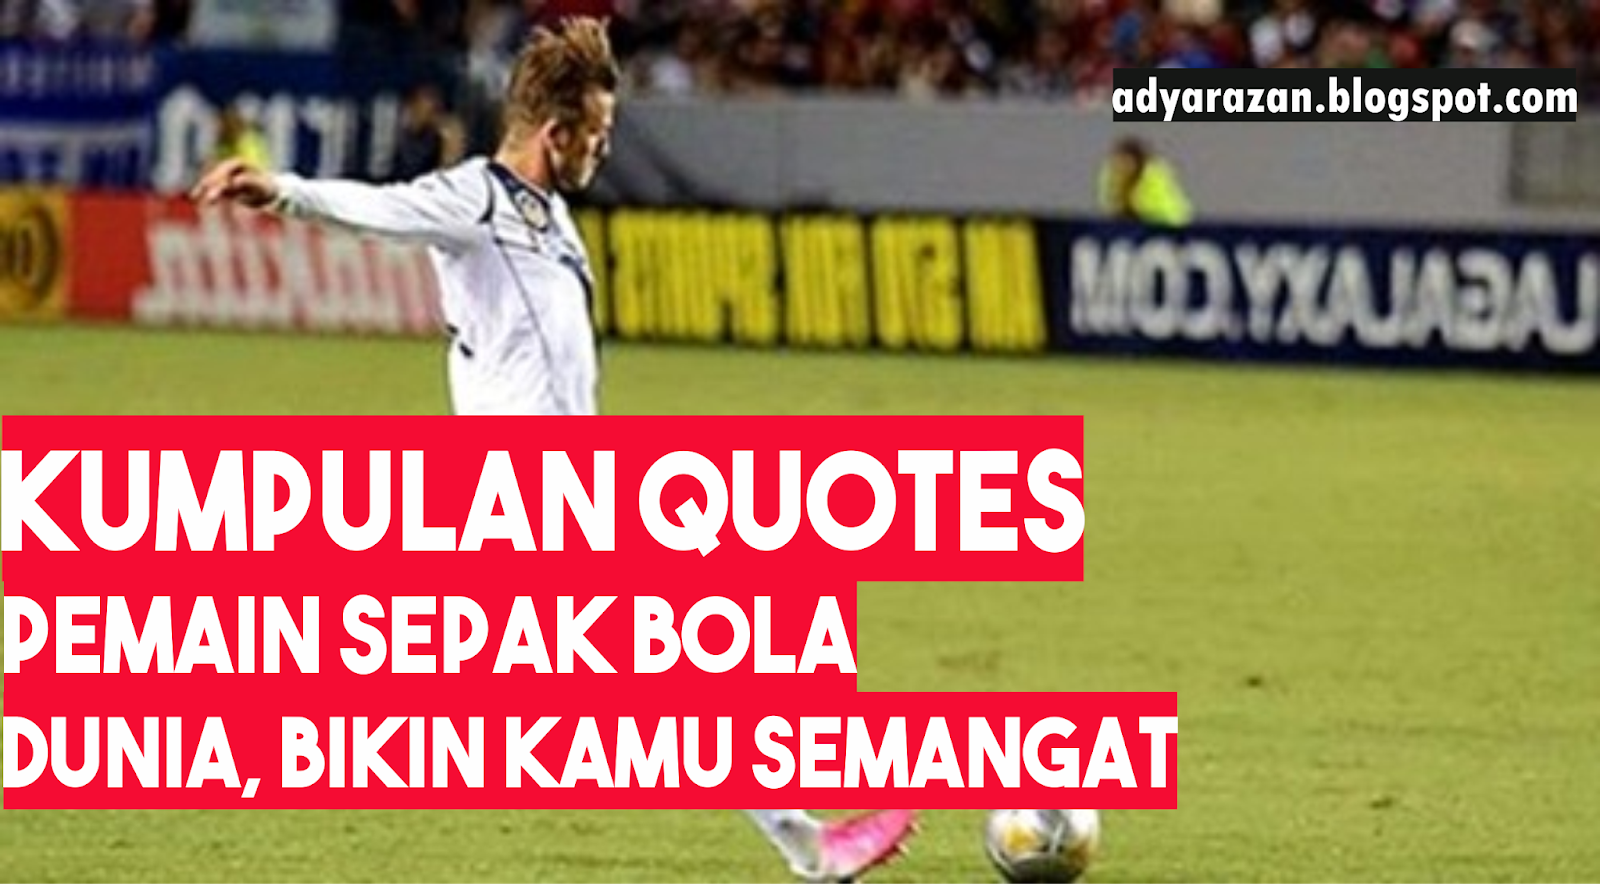 Quotes Bijak, Motivasi dan Penyemangat dari Pemain Sepakbola Dunia